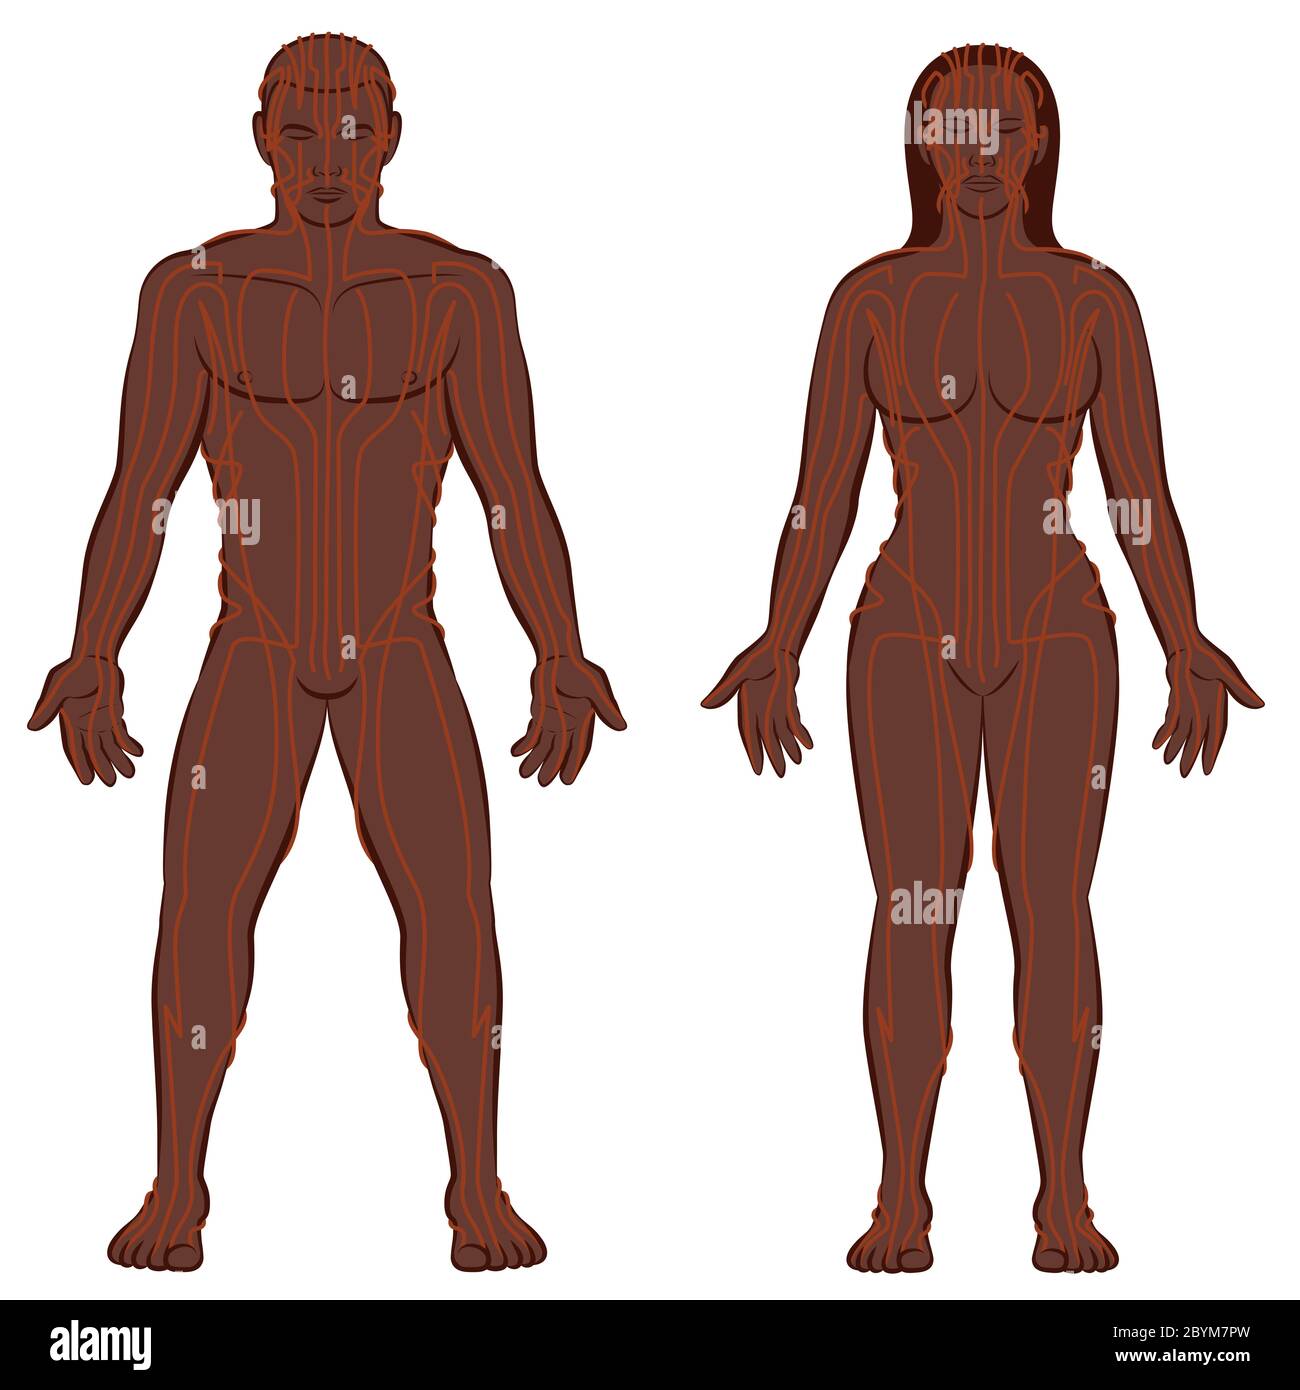 MERIDIAN SYSTEMKARTE, schwarzes Paar, männlicher und weiblicher Körper mit Meridianen, traditionelle chinesische Medizin - Abbildung auf weißem Hintergrund Stockfoto